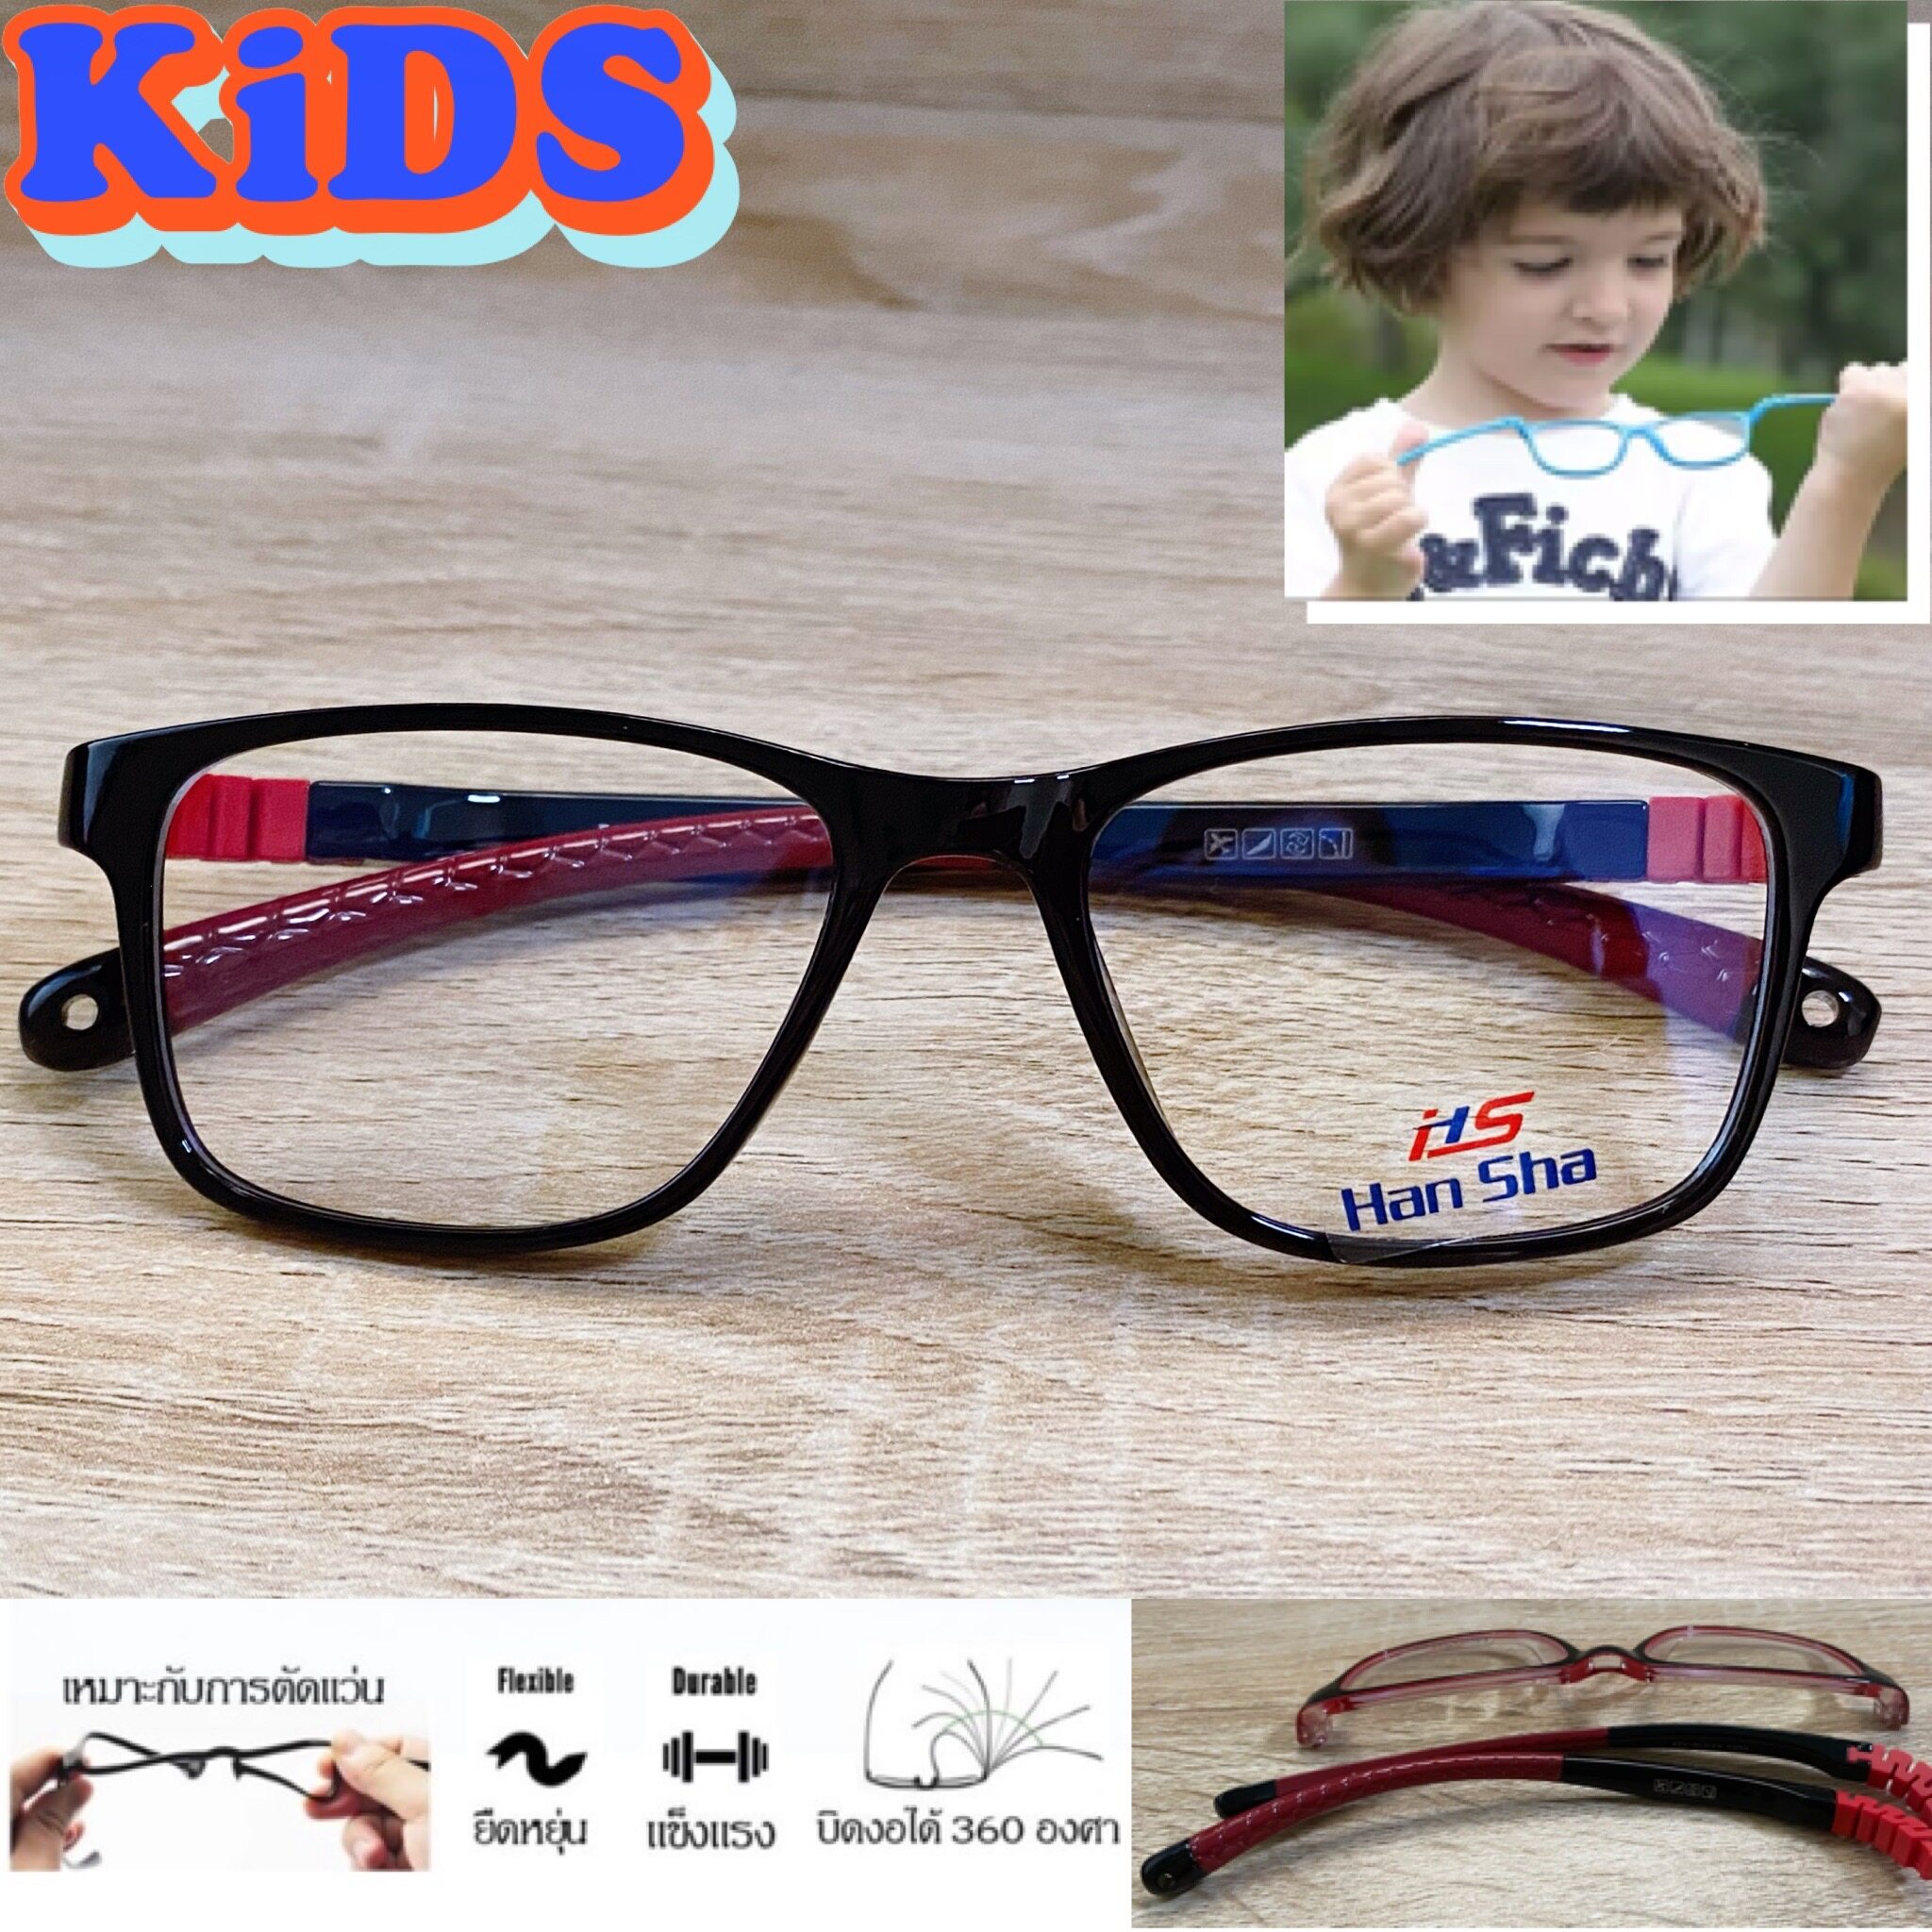 แว่นตาเด็ก กรอบแว่นตาเด็ก สำหรับตัดเลนส์ แว่นตา Han Sha รุ่น 5003 สีดำขาแดง ขาไม่ใช้น็อต ยืดหยุ่น ถอดขาเปลี่ยนได้ วัสดุ TR 90 เบา ไม่แตกหัก